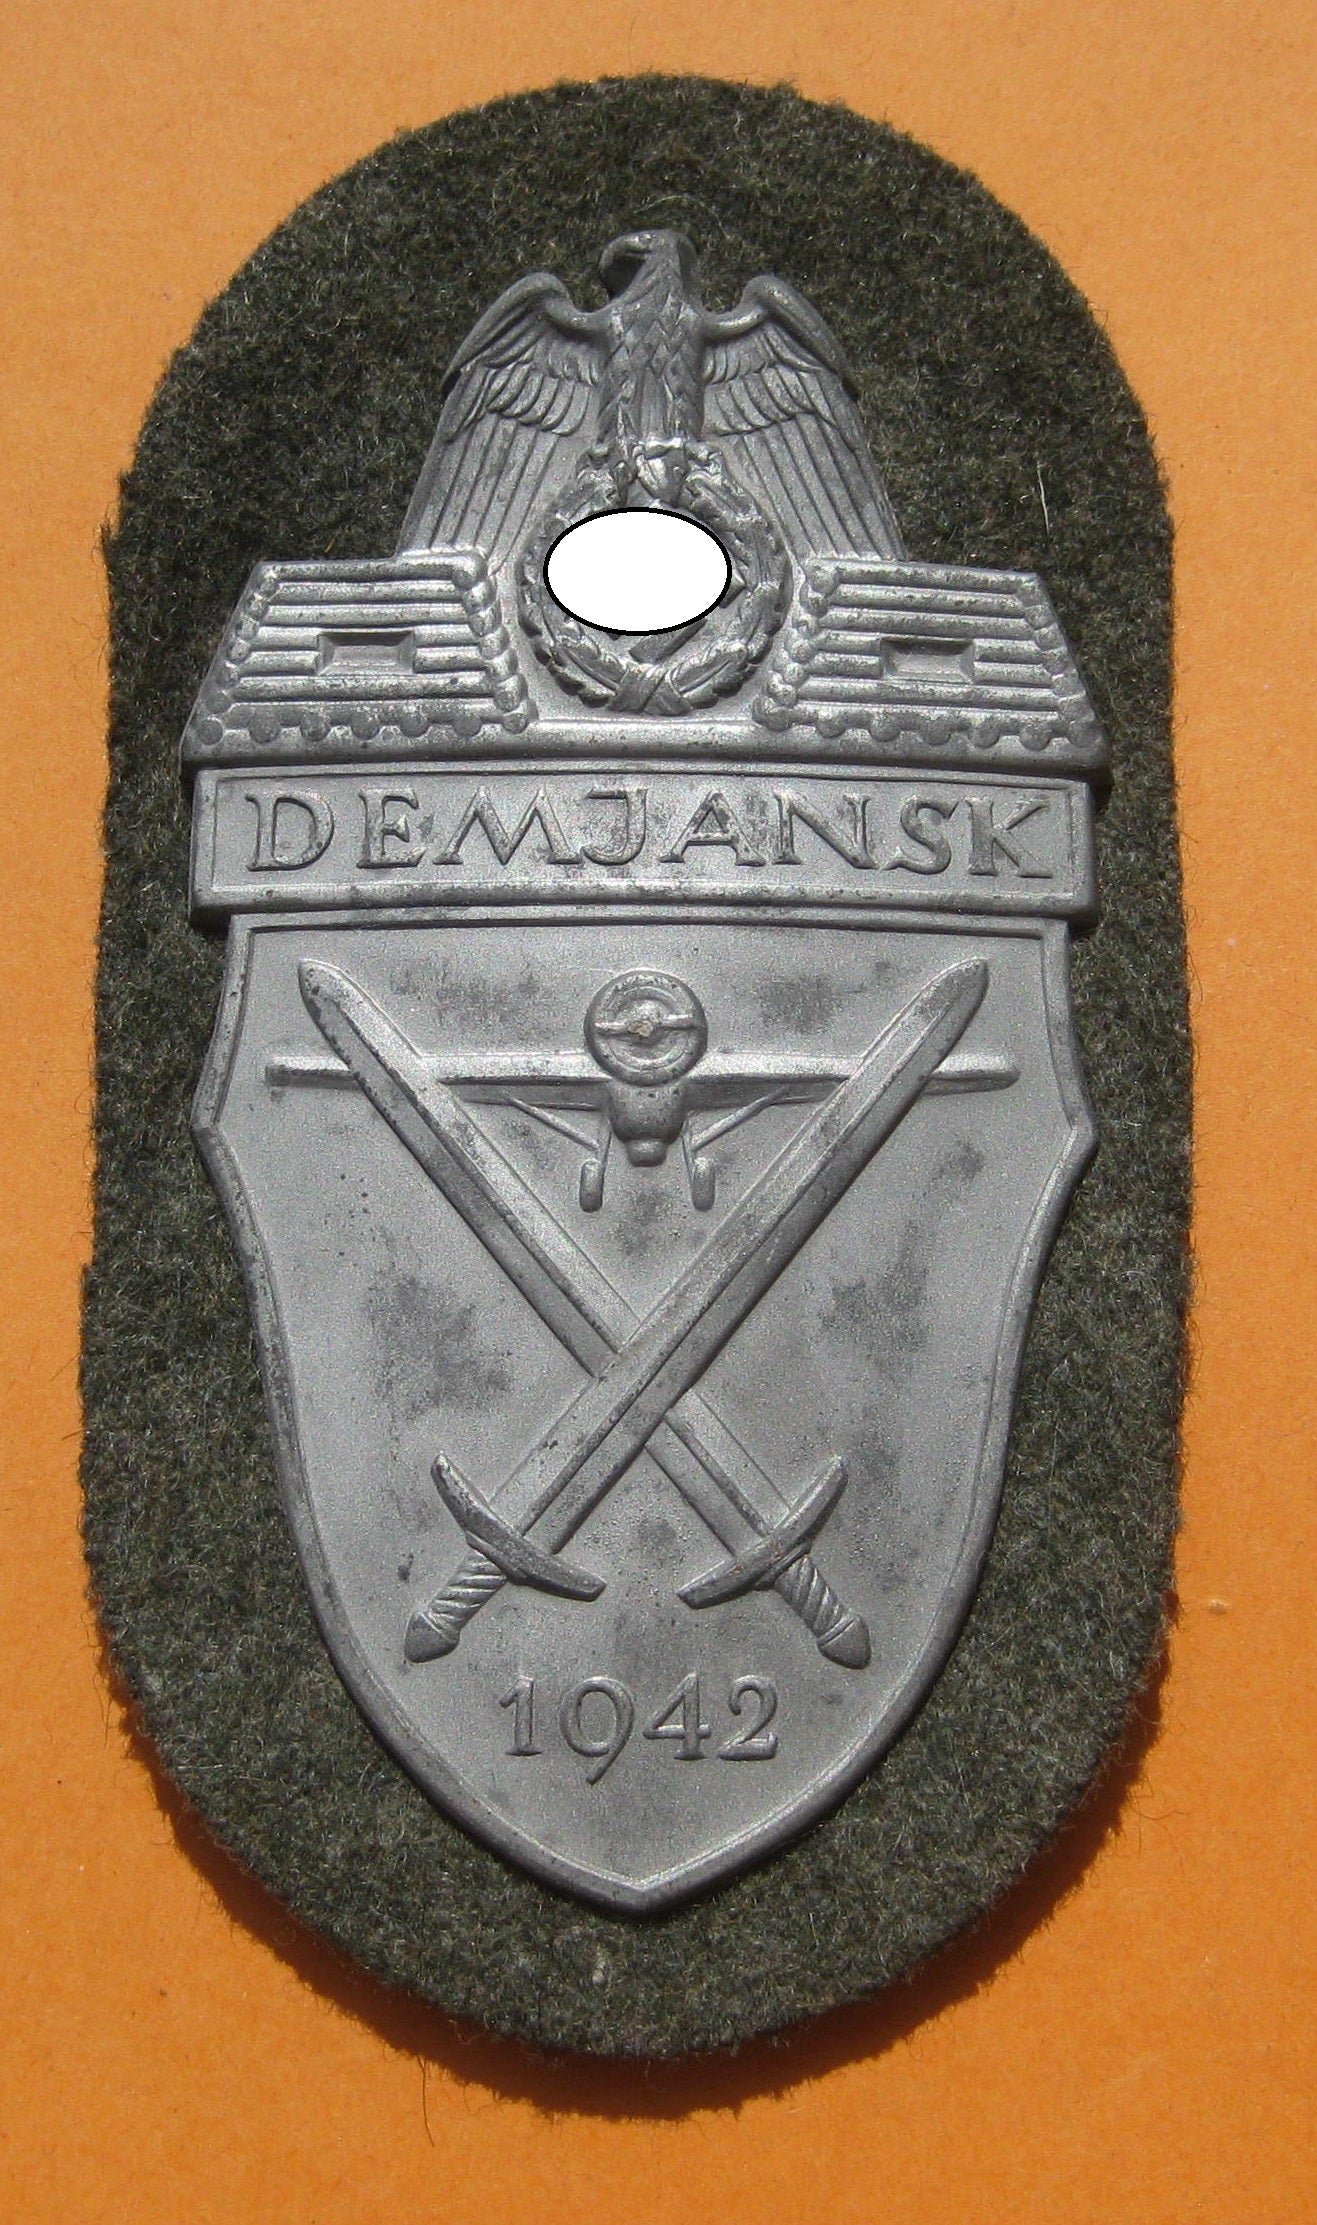 H.W. Demjanskschild 1942